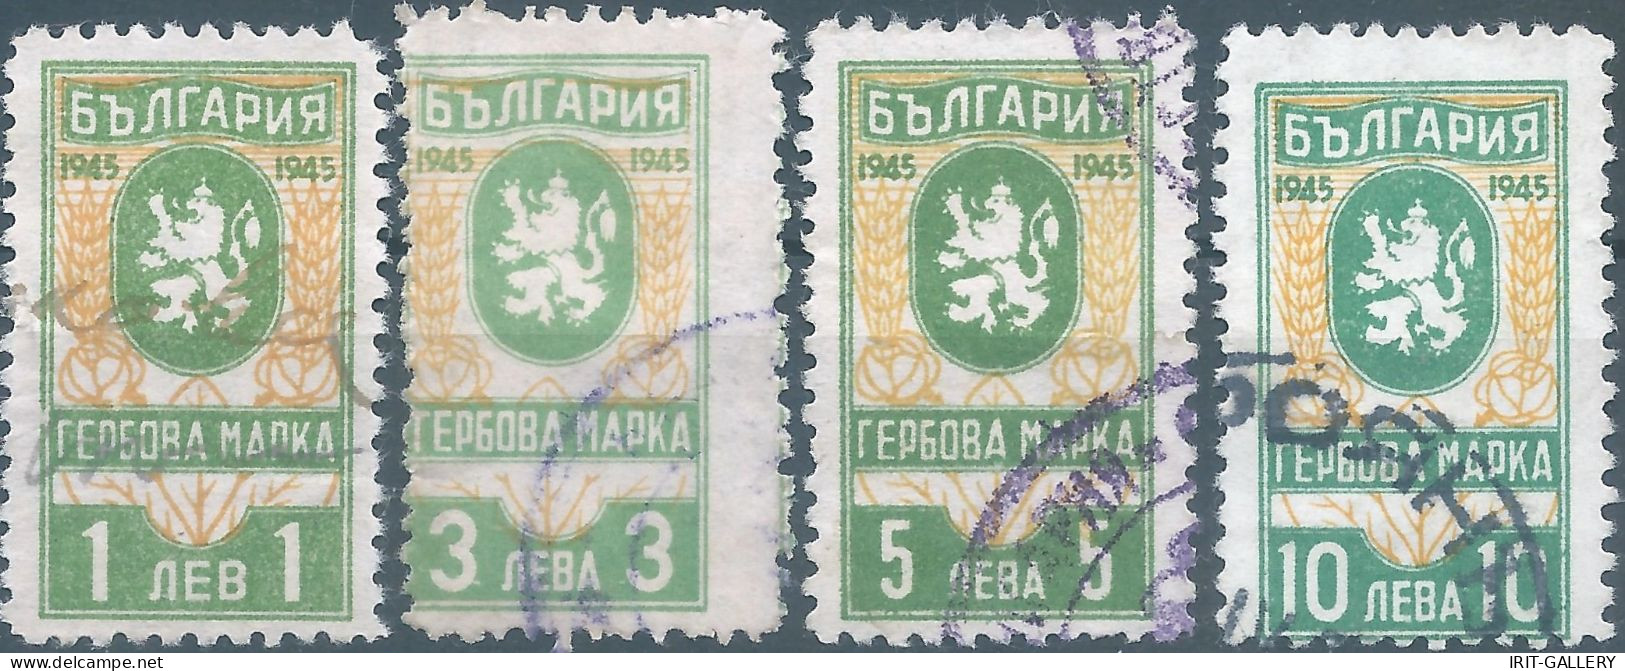 Bulgaria - Bulgarien - Bulgare,1945 Revenue Stamp Tax Fiscal,Used - Dienstmarken